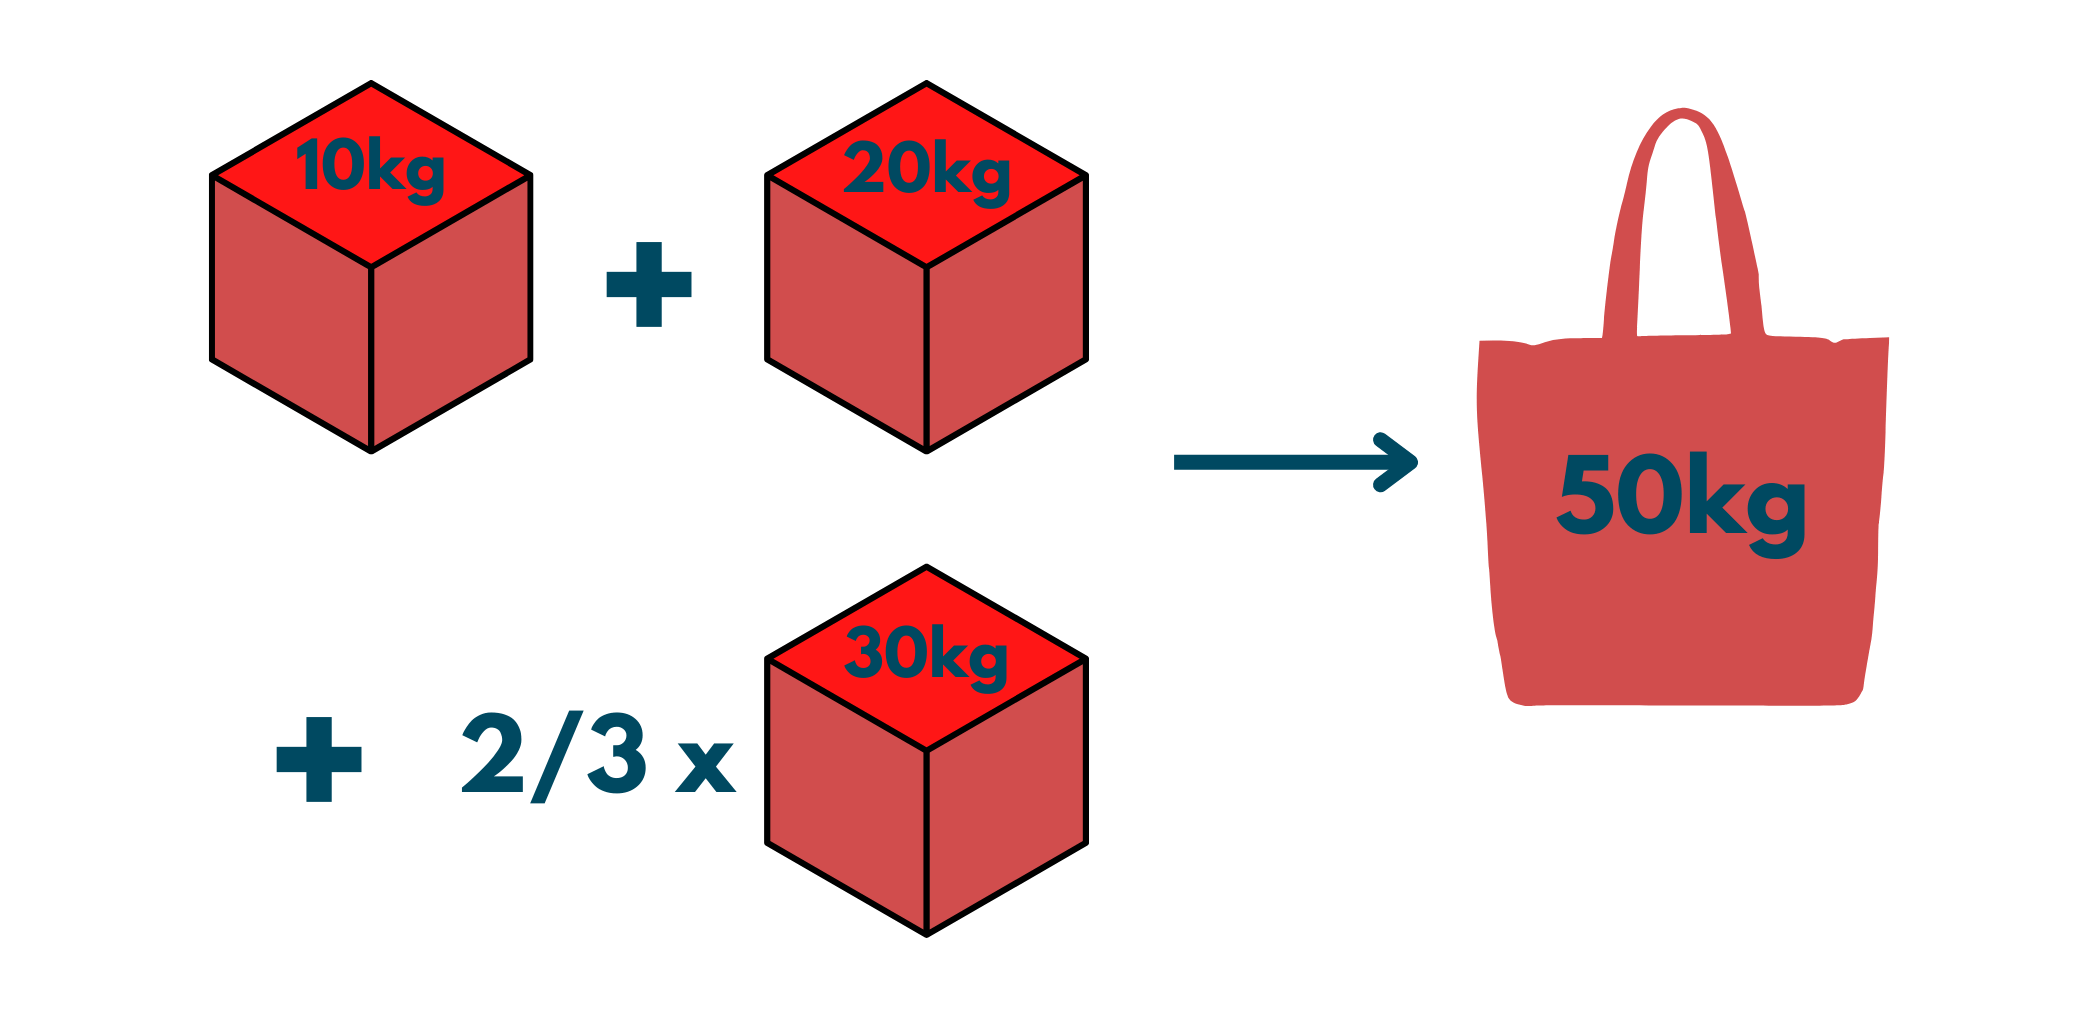 Fractional Knapsack Problem in C++